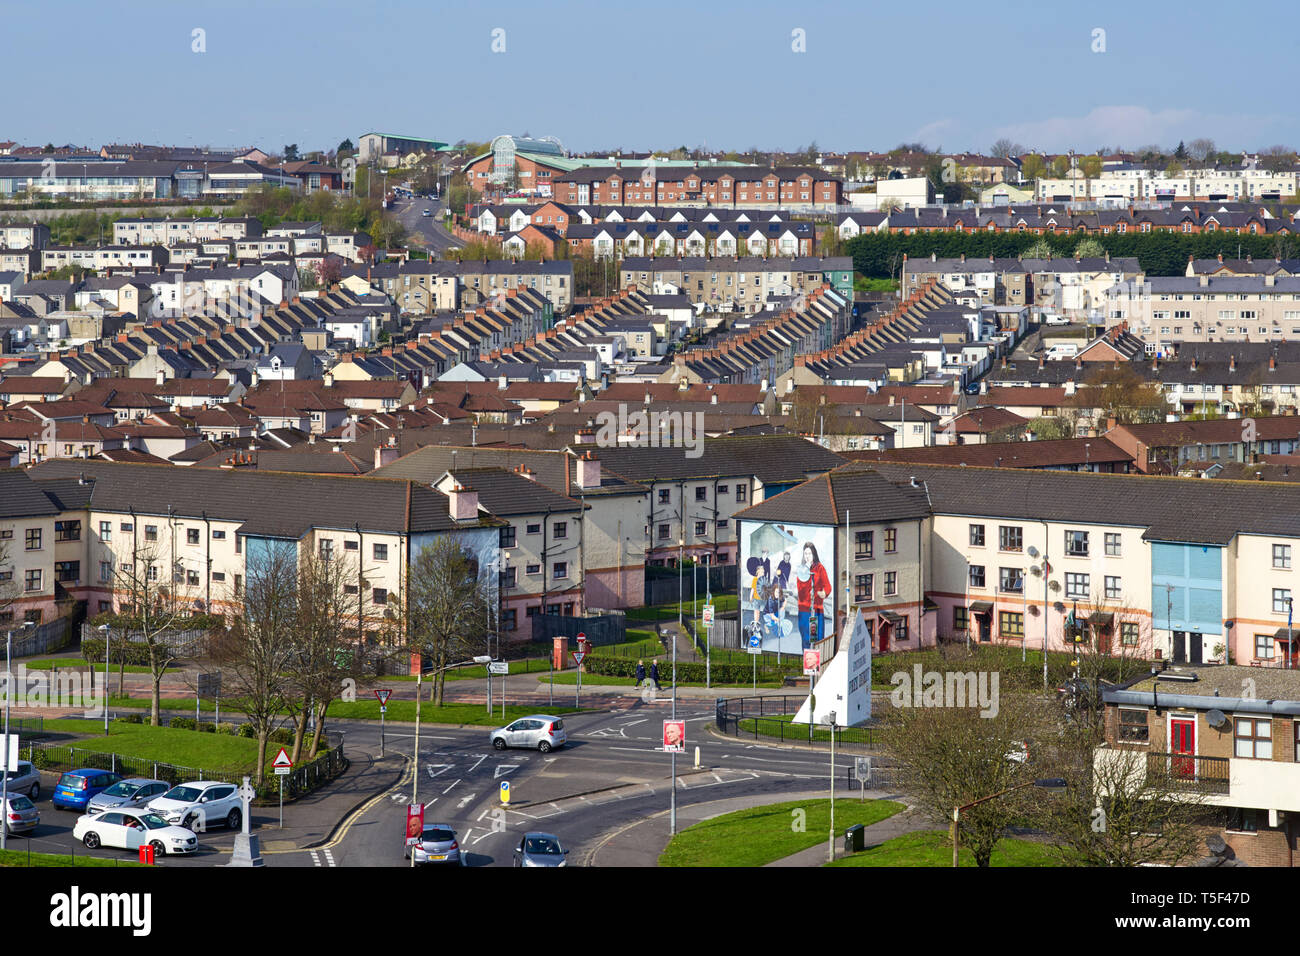 Guardando verso il basso sulla zona Bogside di Londonderry nell'densly popolata principalmente zona cattolica della libera Derry. Foto Stock